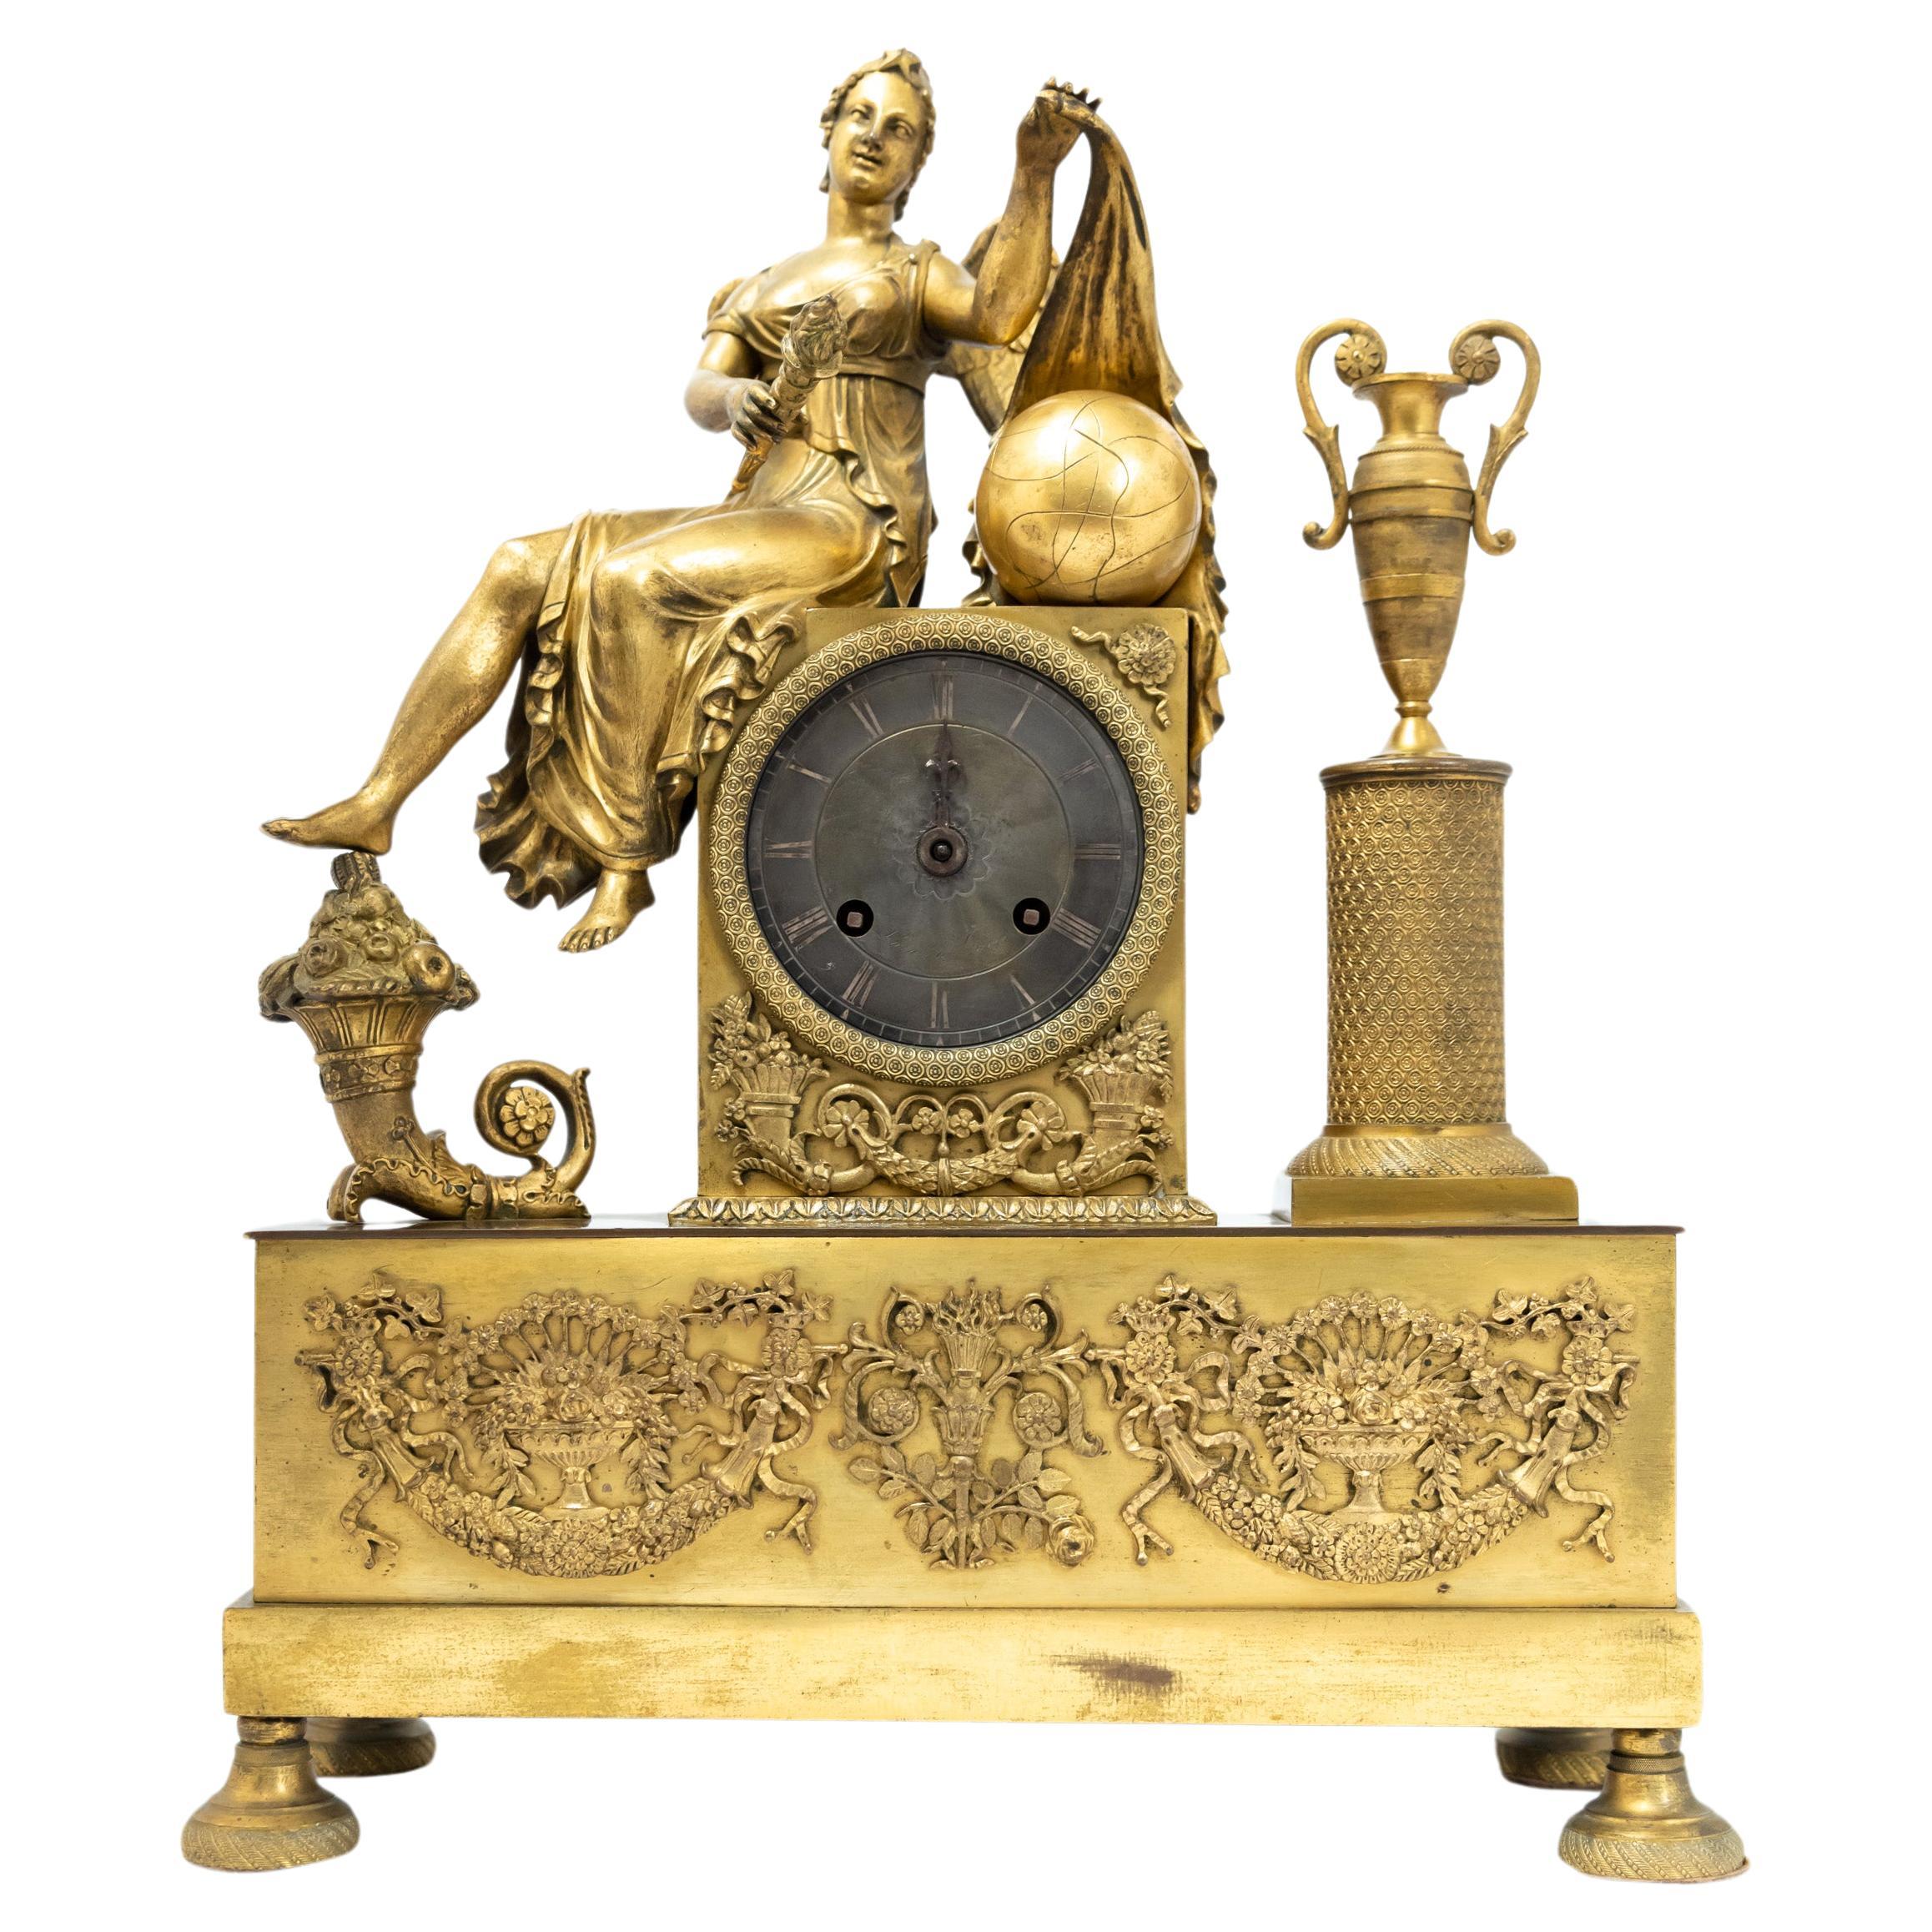 Figure féminine assise dans une horloge française dorée au feu de l'époque Empire